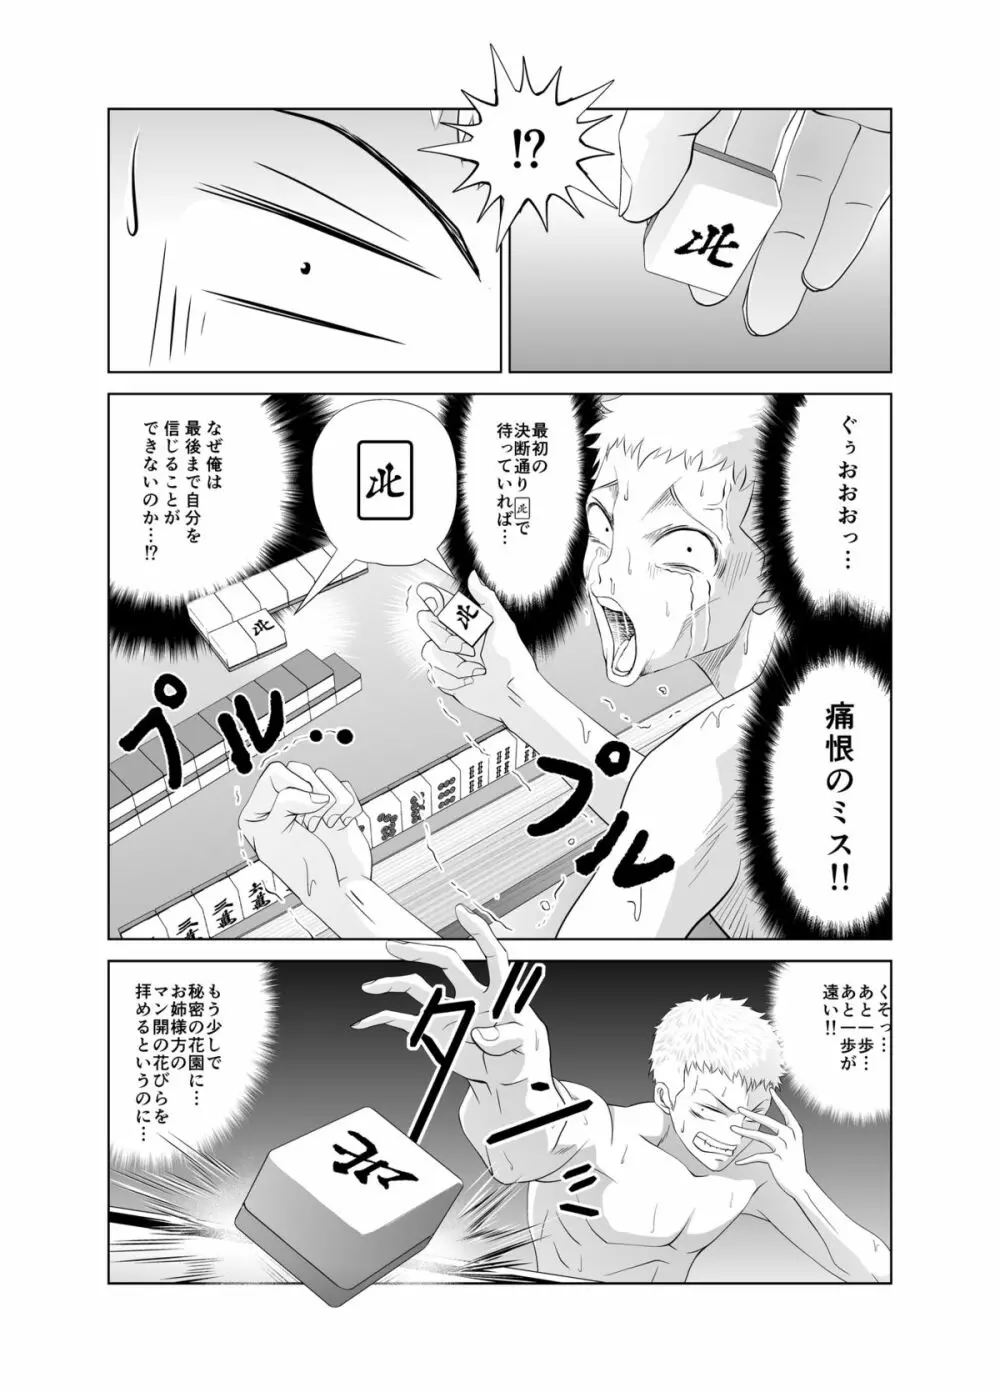 脱衣麻雀～漫画編～【完成版】 26ページ